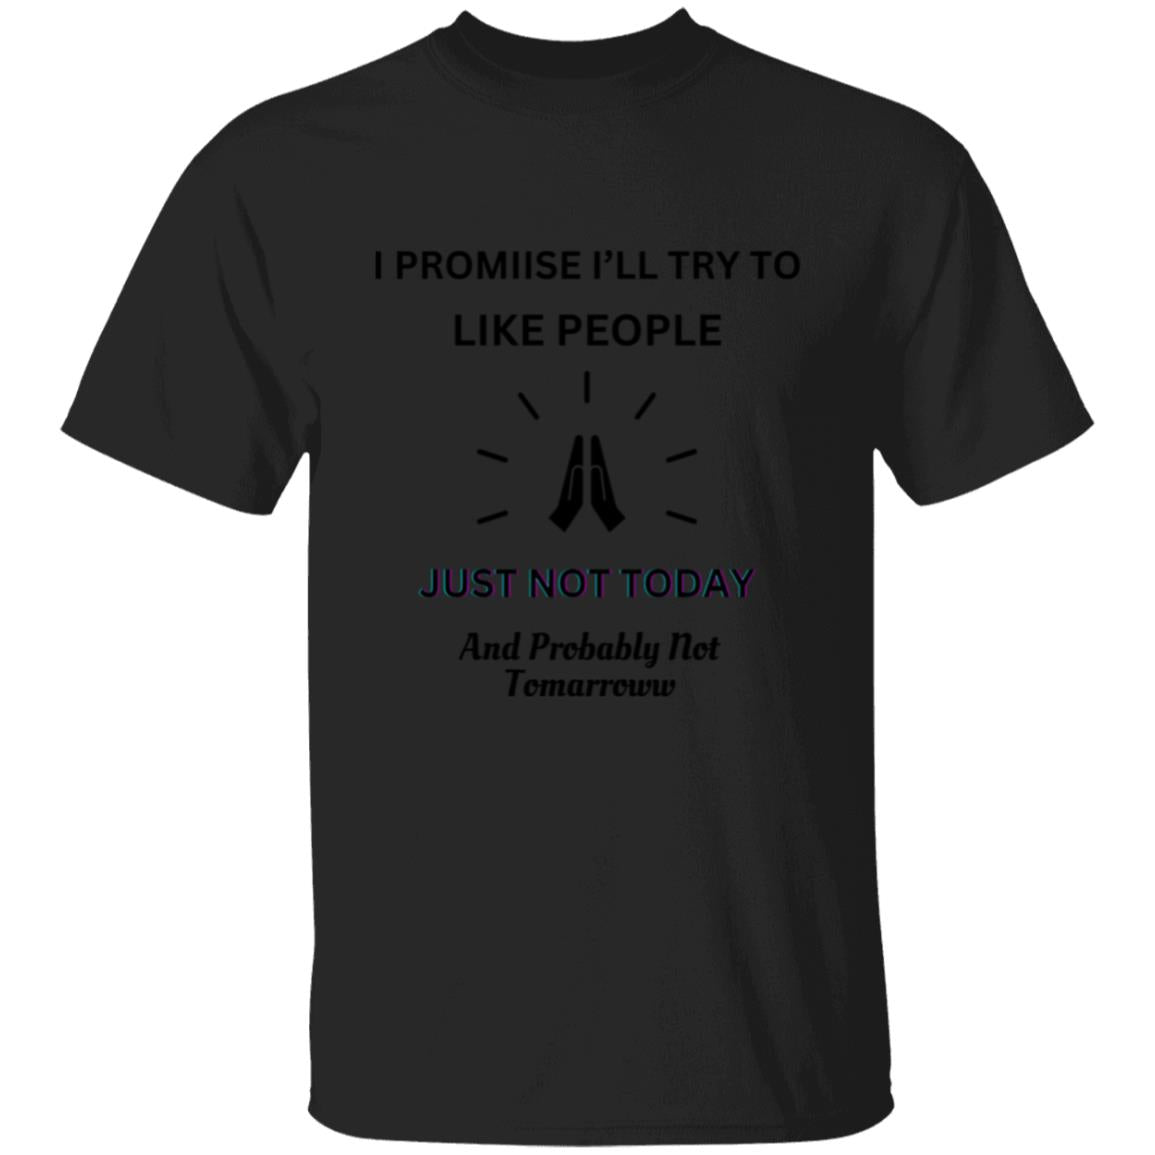 I PROMISE TO LIKE PEOPLE... (UNISEX) T-Shirt